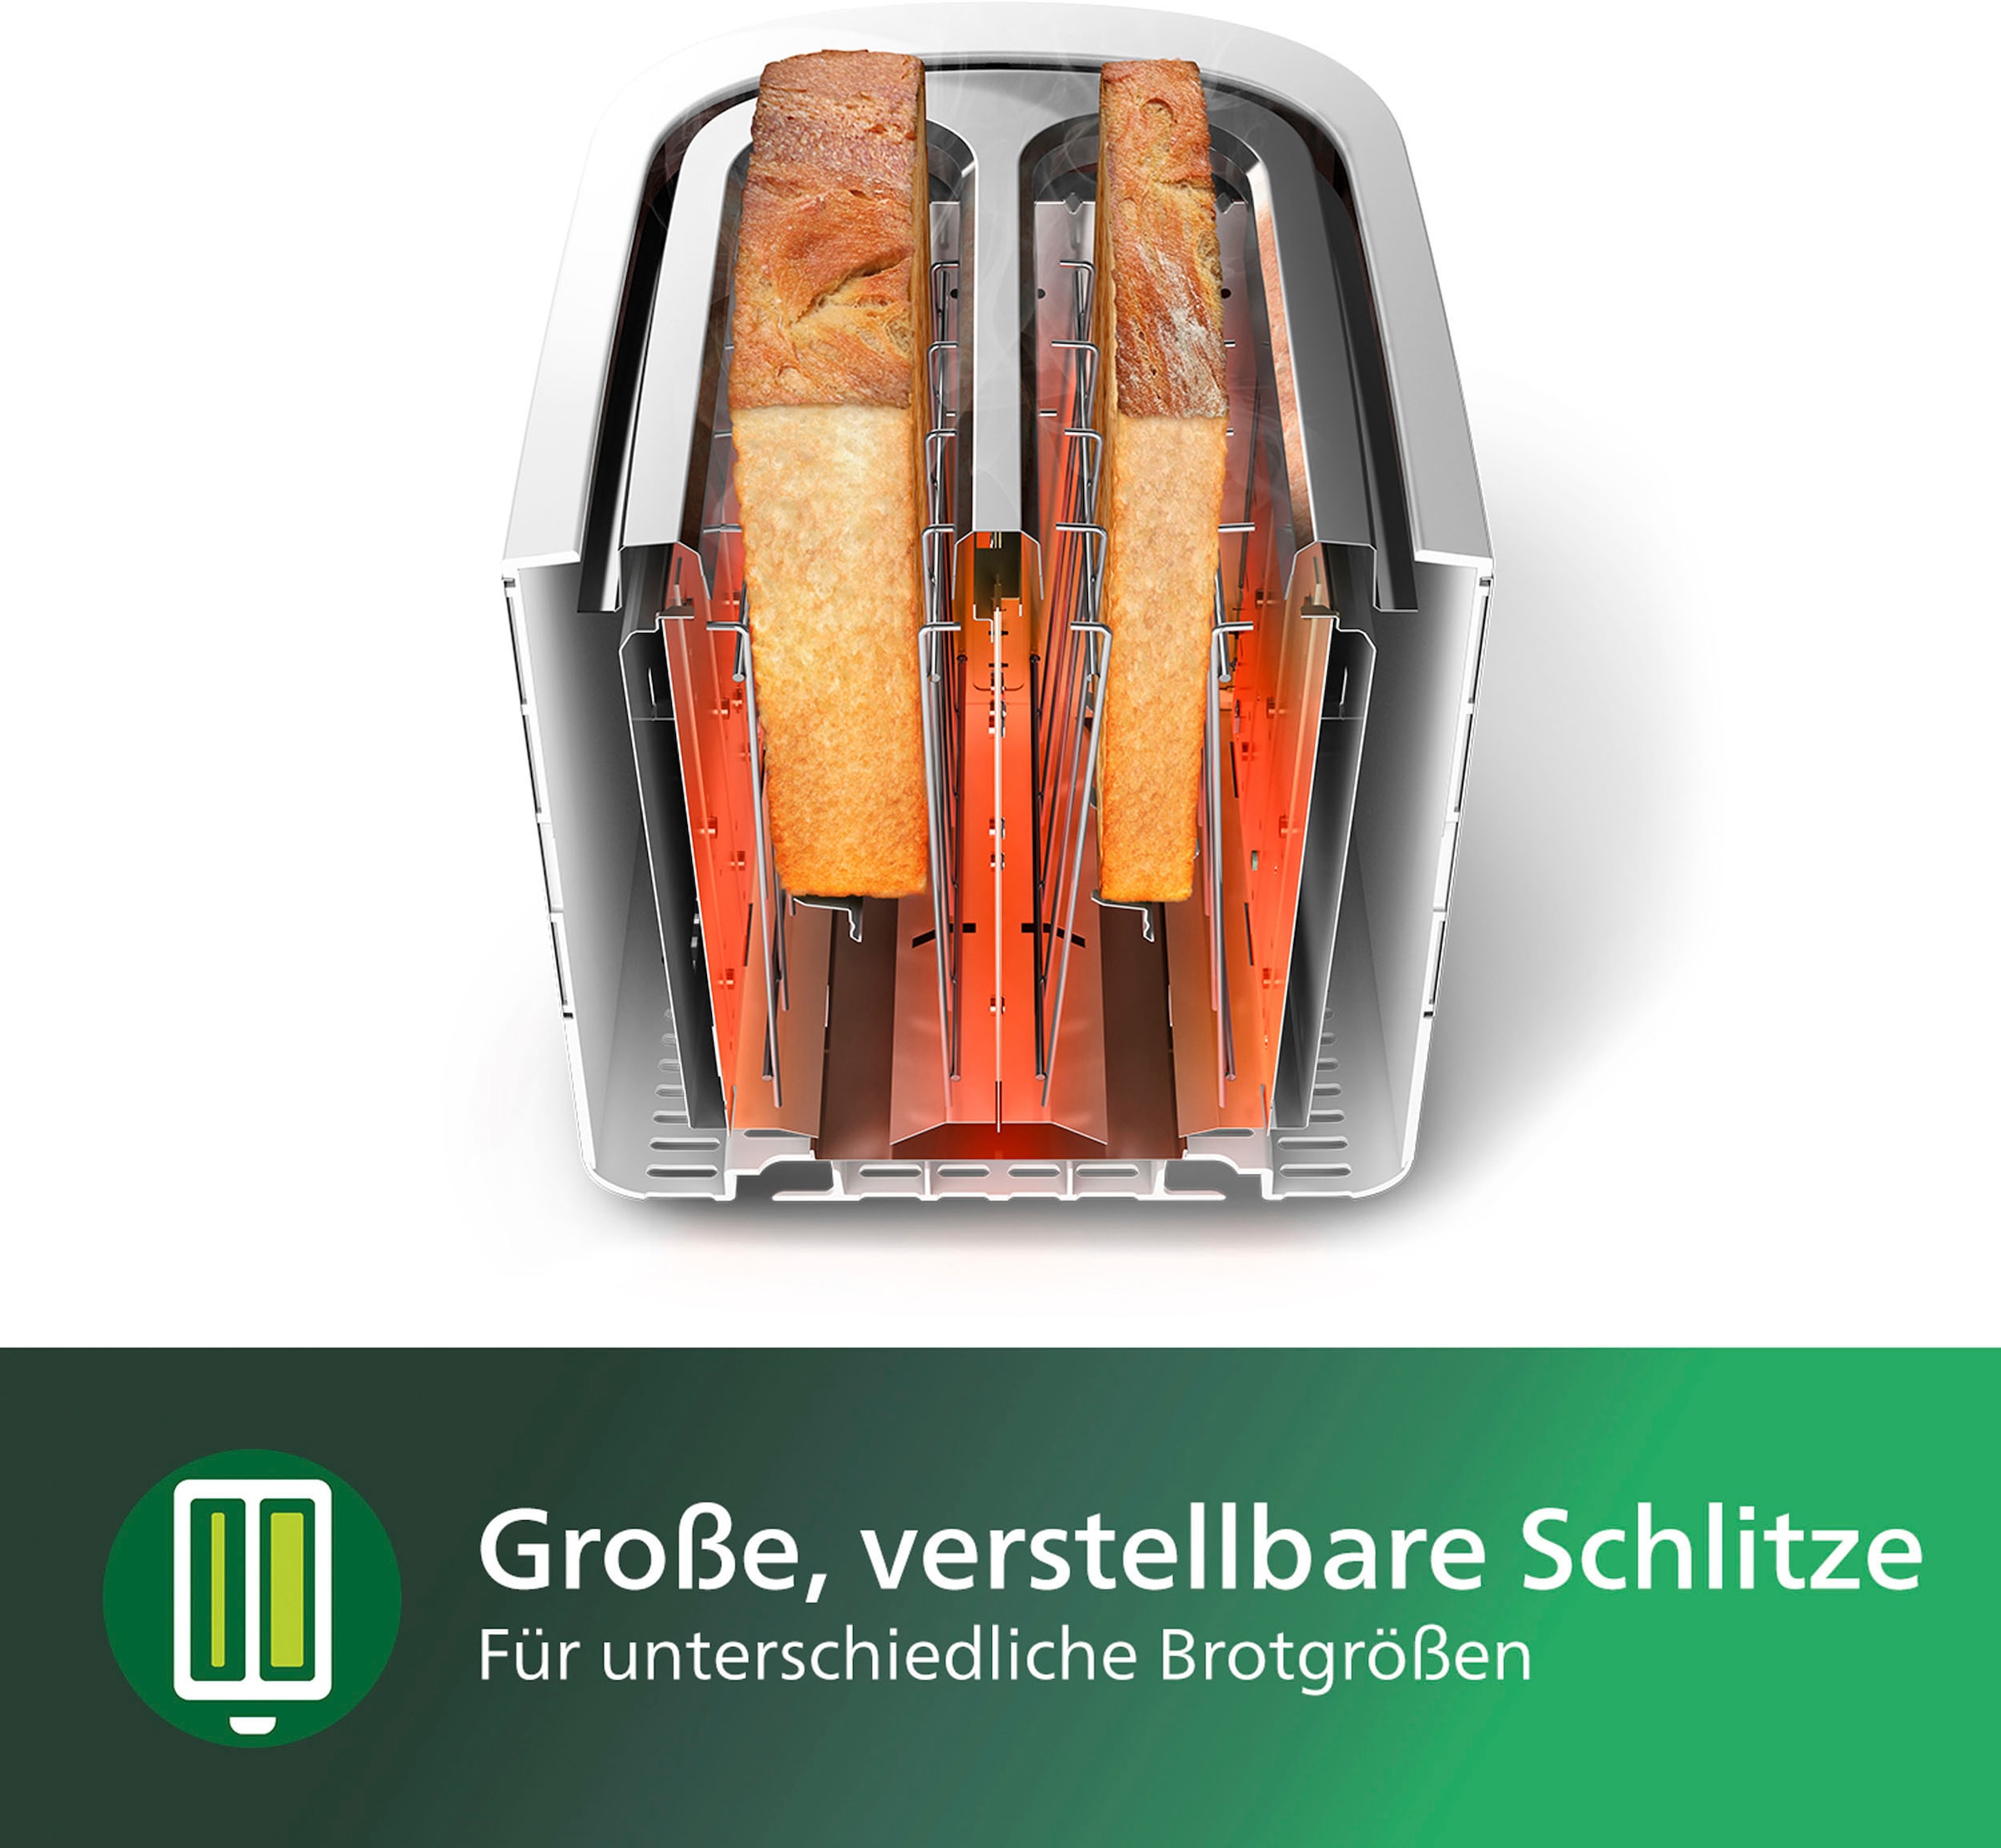 Philips Toaster »HD2581/00«, 2 kurze Schlitze, 830 W, integrierter Brötchenaufsatz, weiss